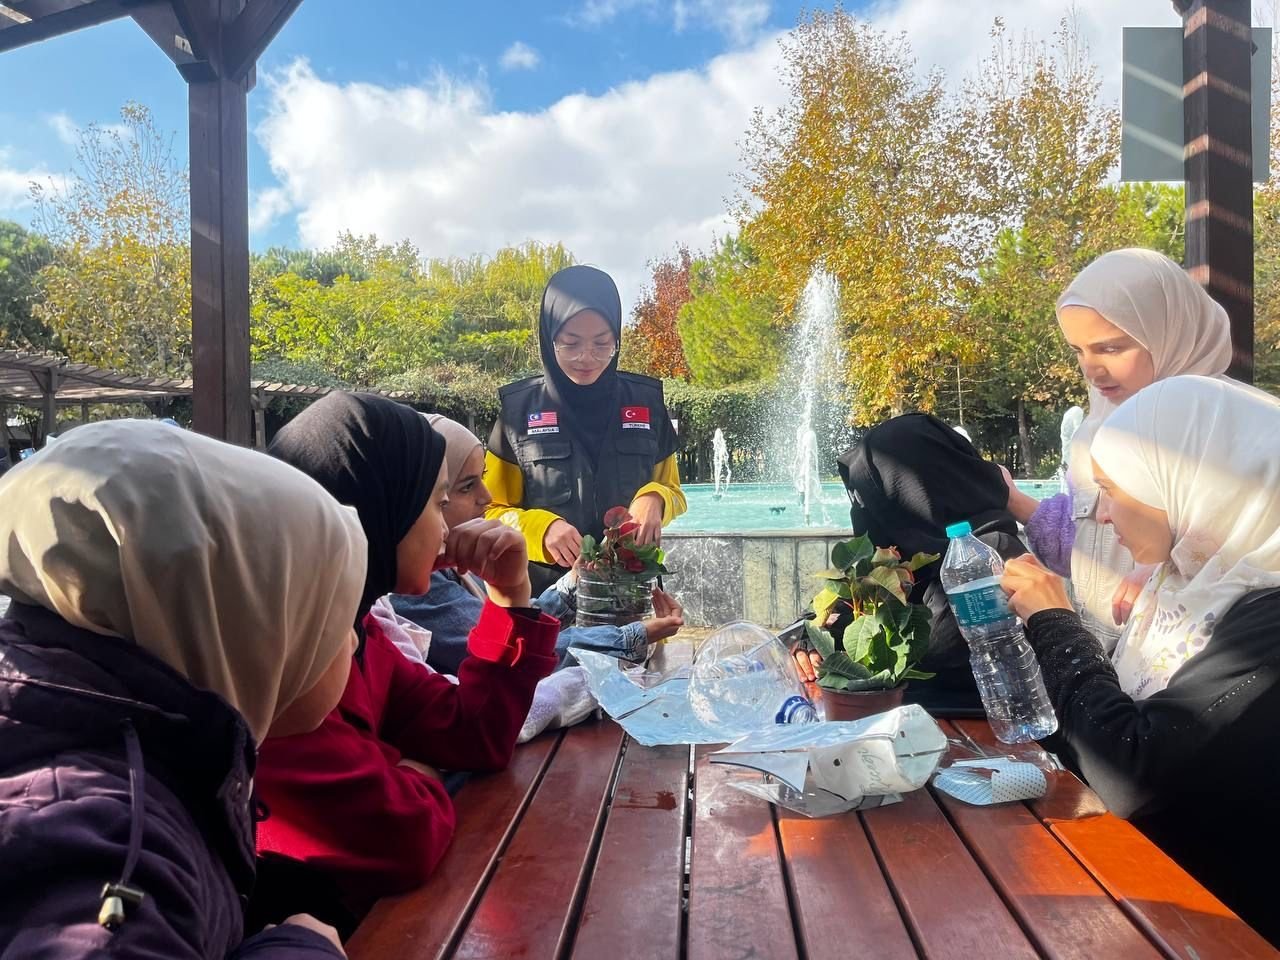 Anak-anak menanam bunga dalam botol air plastik daur ulang, Istanbul, Türkiye, 13 November 2022. (Foto oleh Maisarah)